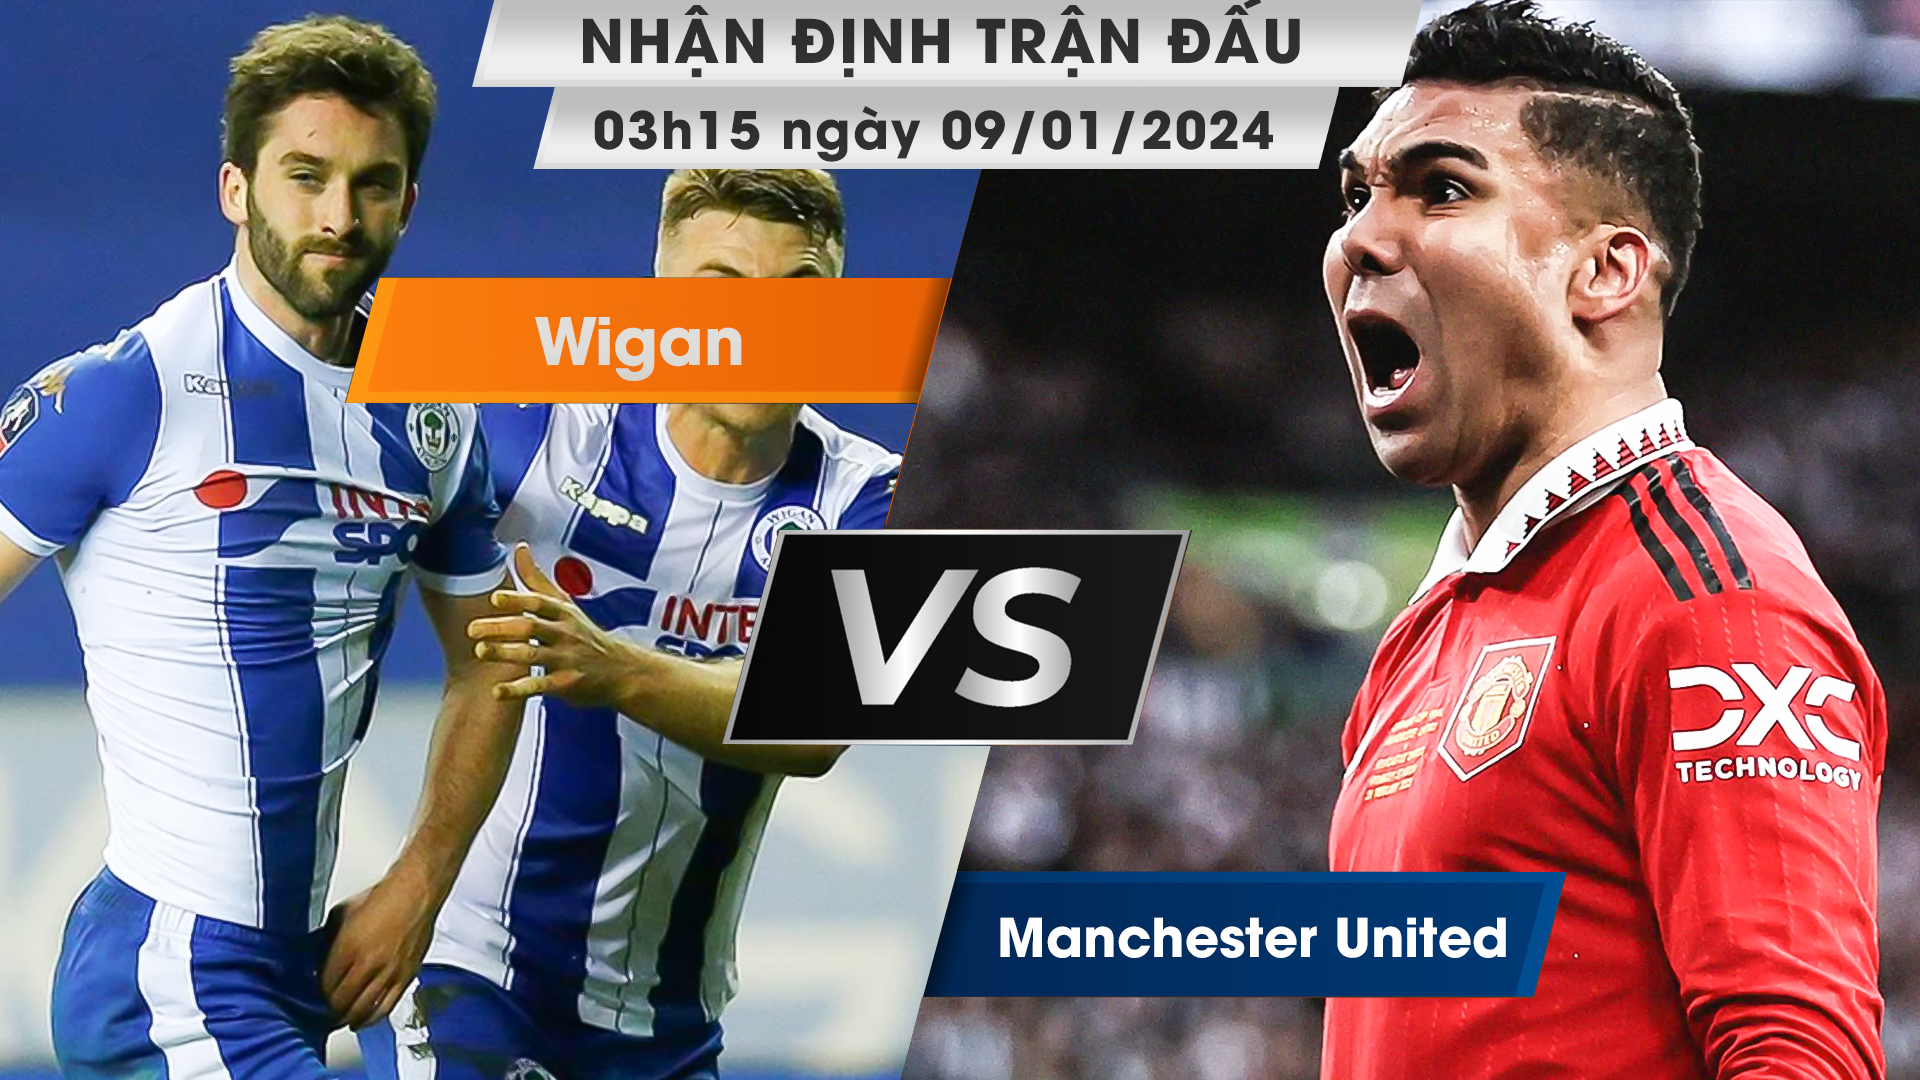 Nhận định, dự đoán Wigan vs Manchester United , 03h15 ngày 09/01/2024